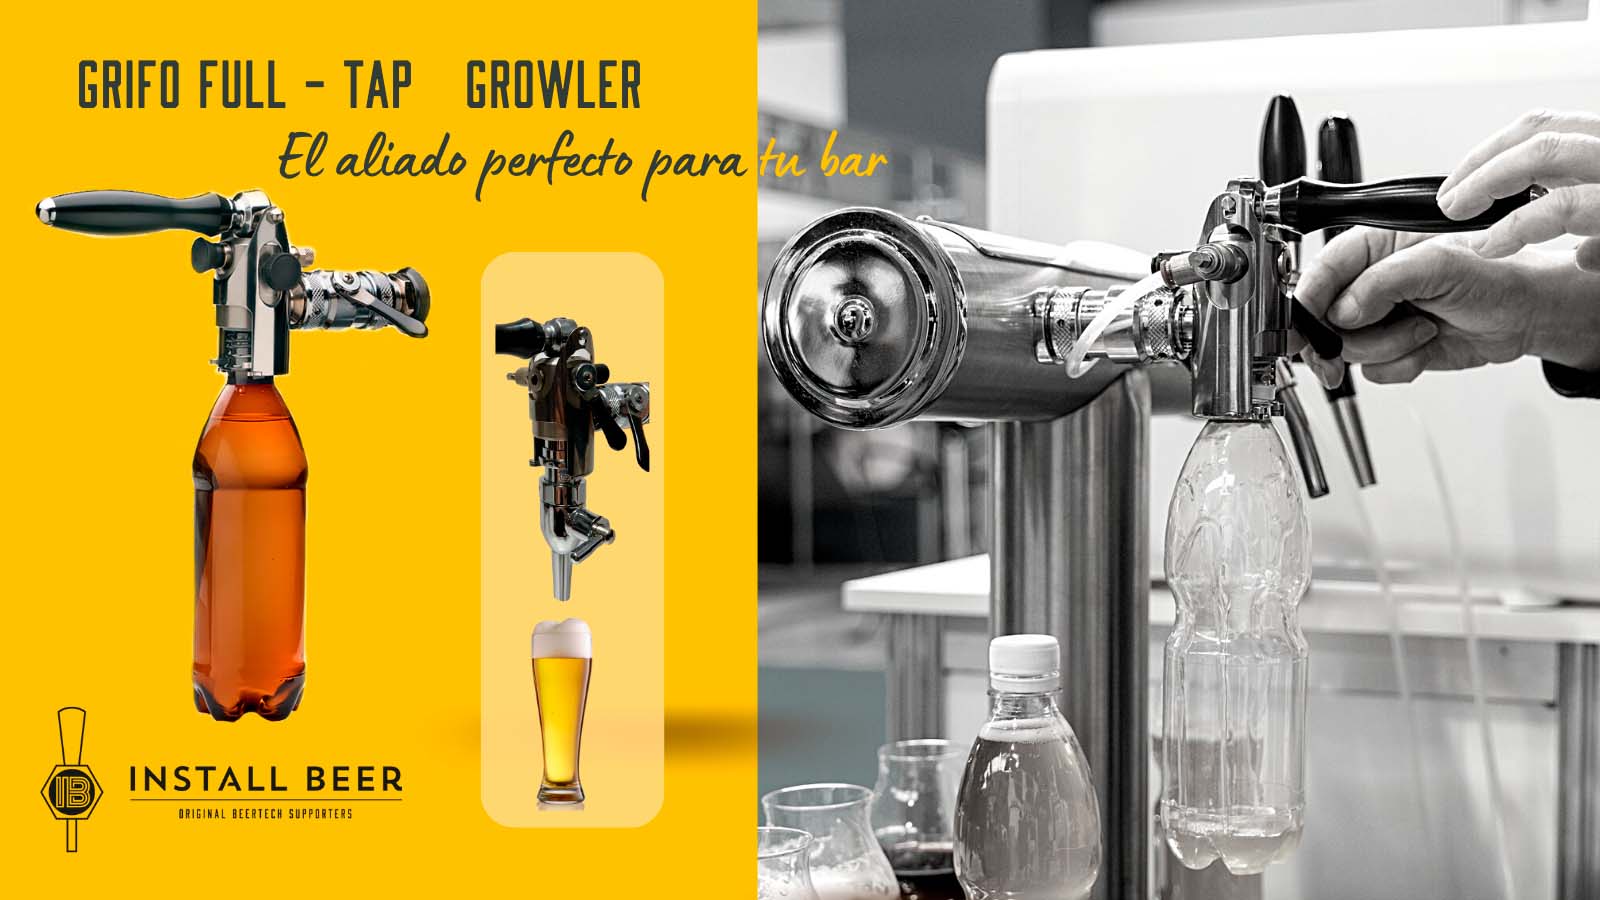 Típico Sinis Modales Dispensar bebidas de barril a grifo y elaborar cerveza – Install Beer